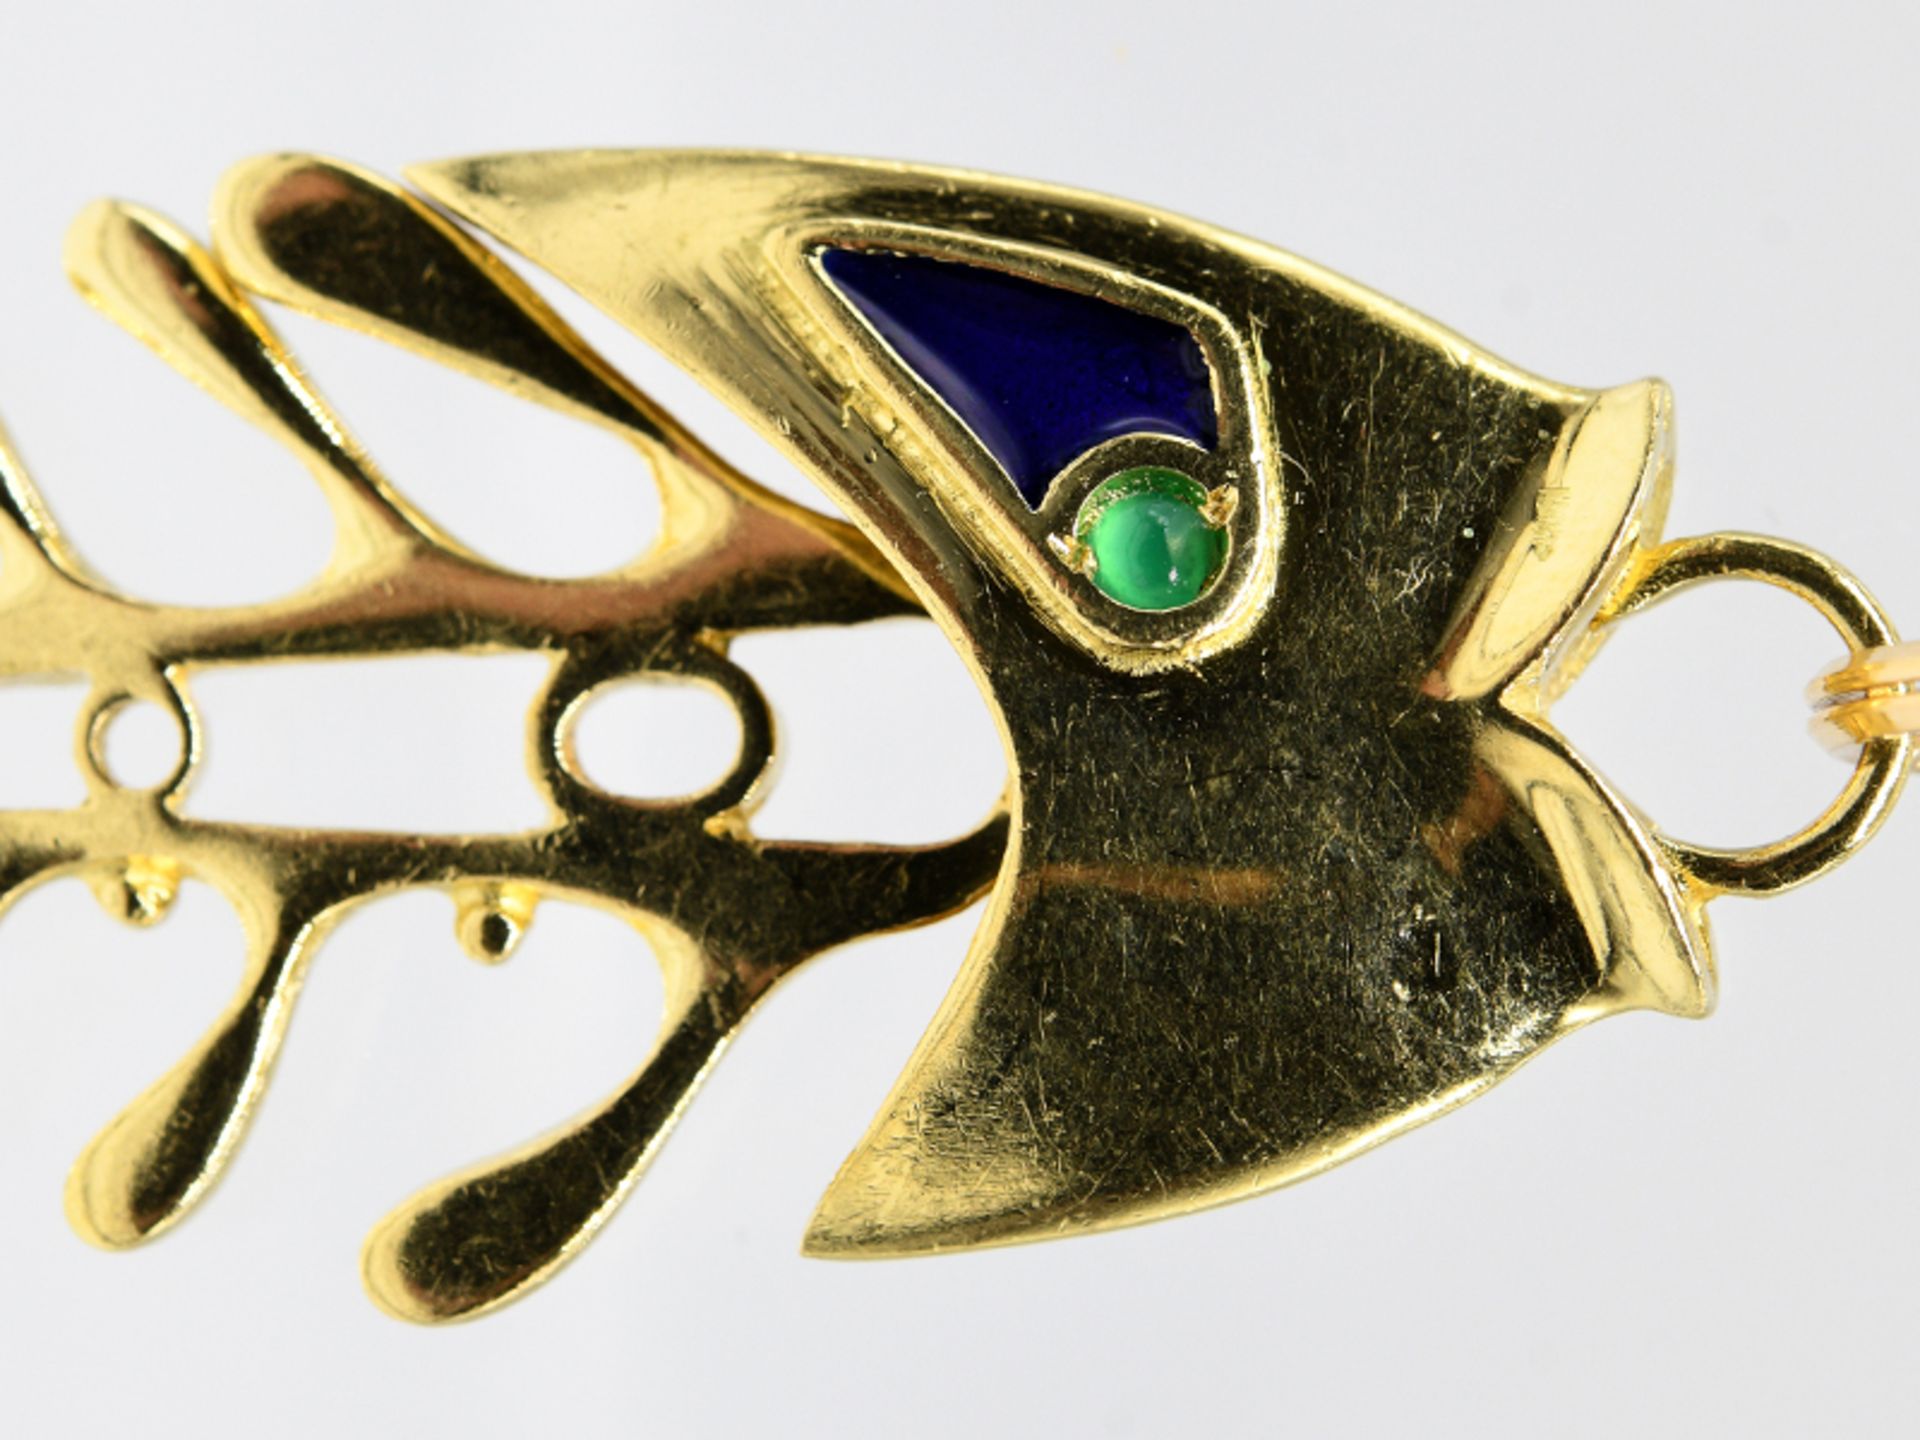 Anhänger "Fisch" mit Smaragd-Cabochons und Emaille; Italien; 90- er Jahre.750/- Gelbgold. - Image 2 of 3